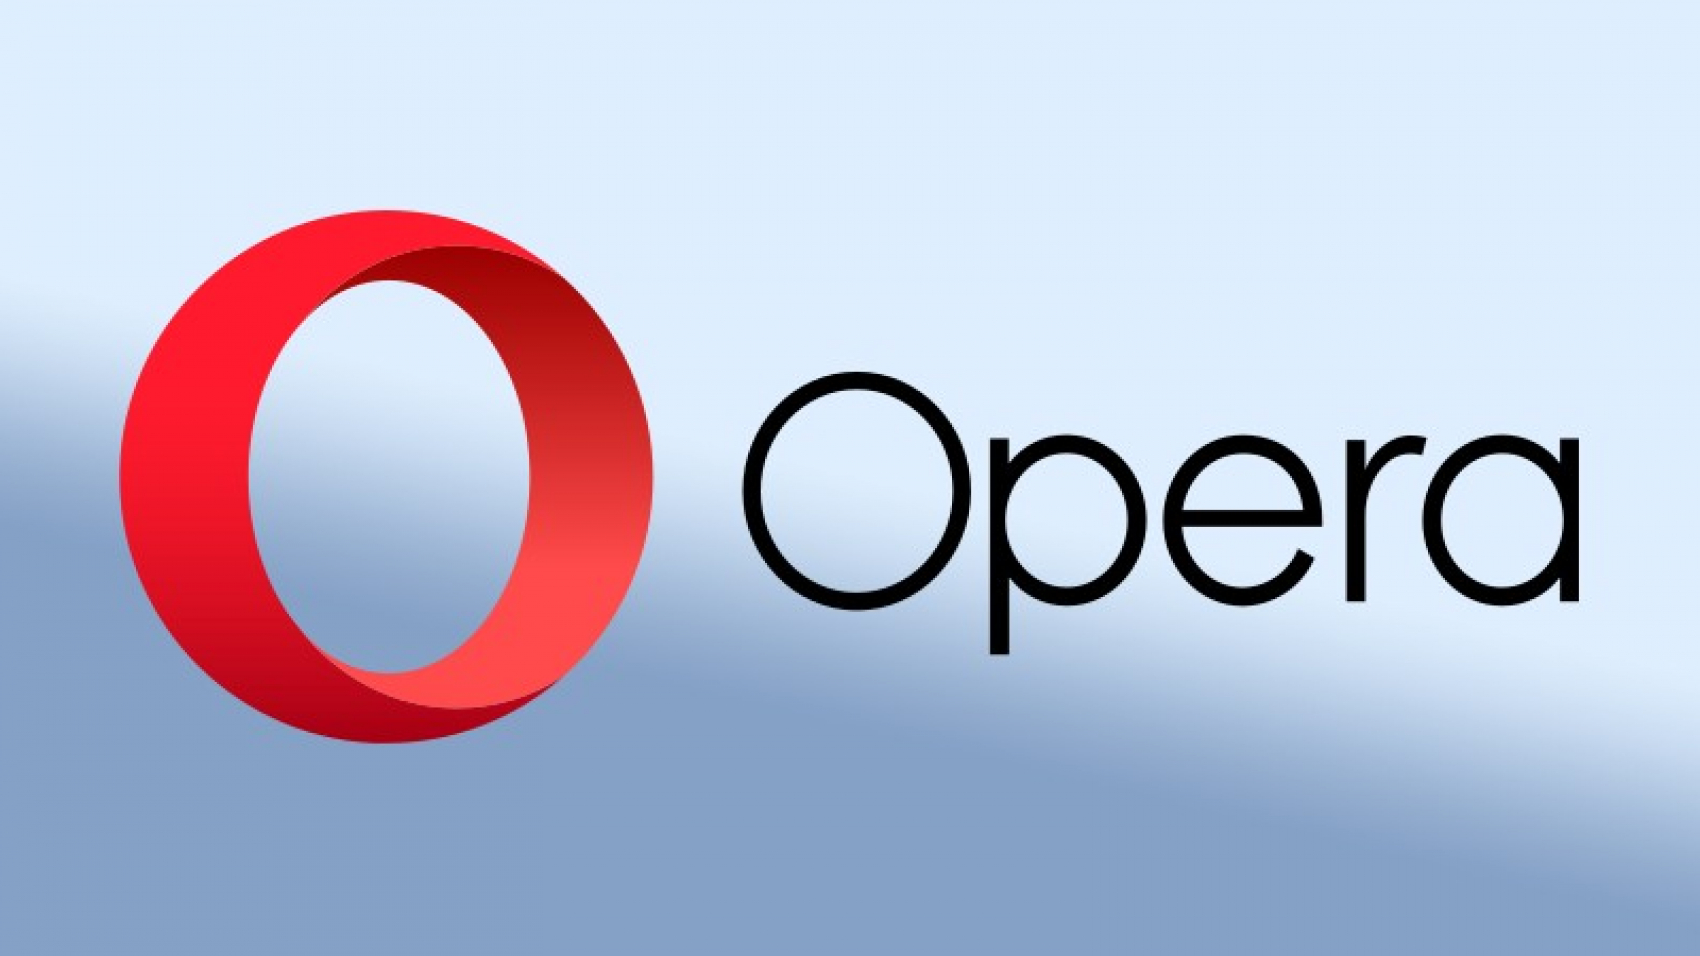 В браузере Opera появится новая функция для защиты данных в буфере обмена